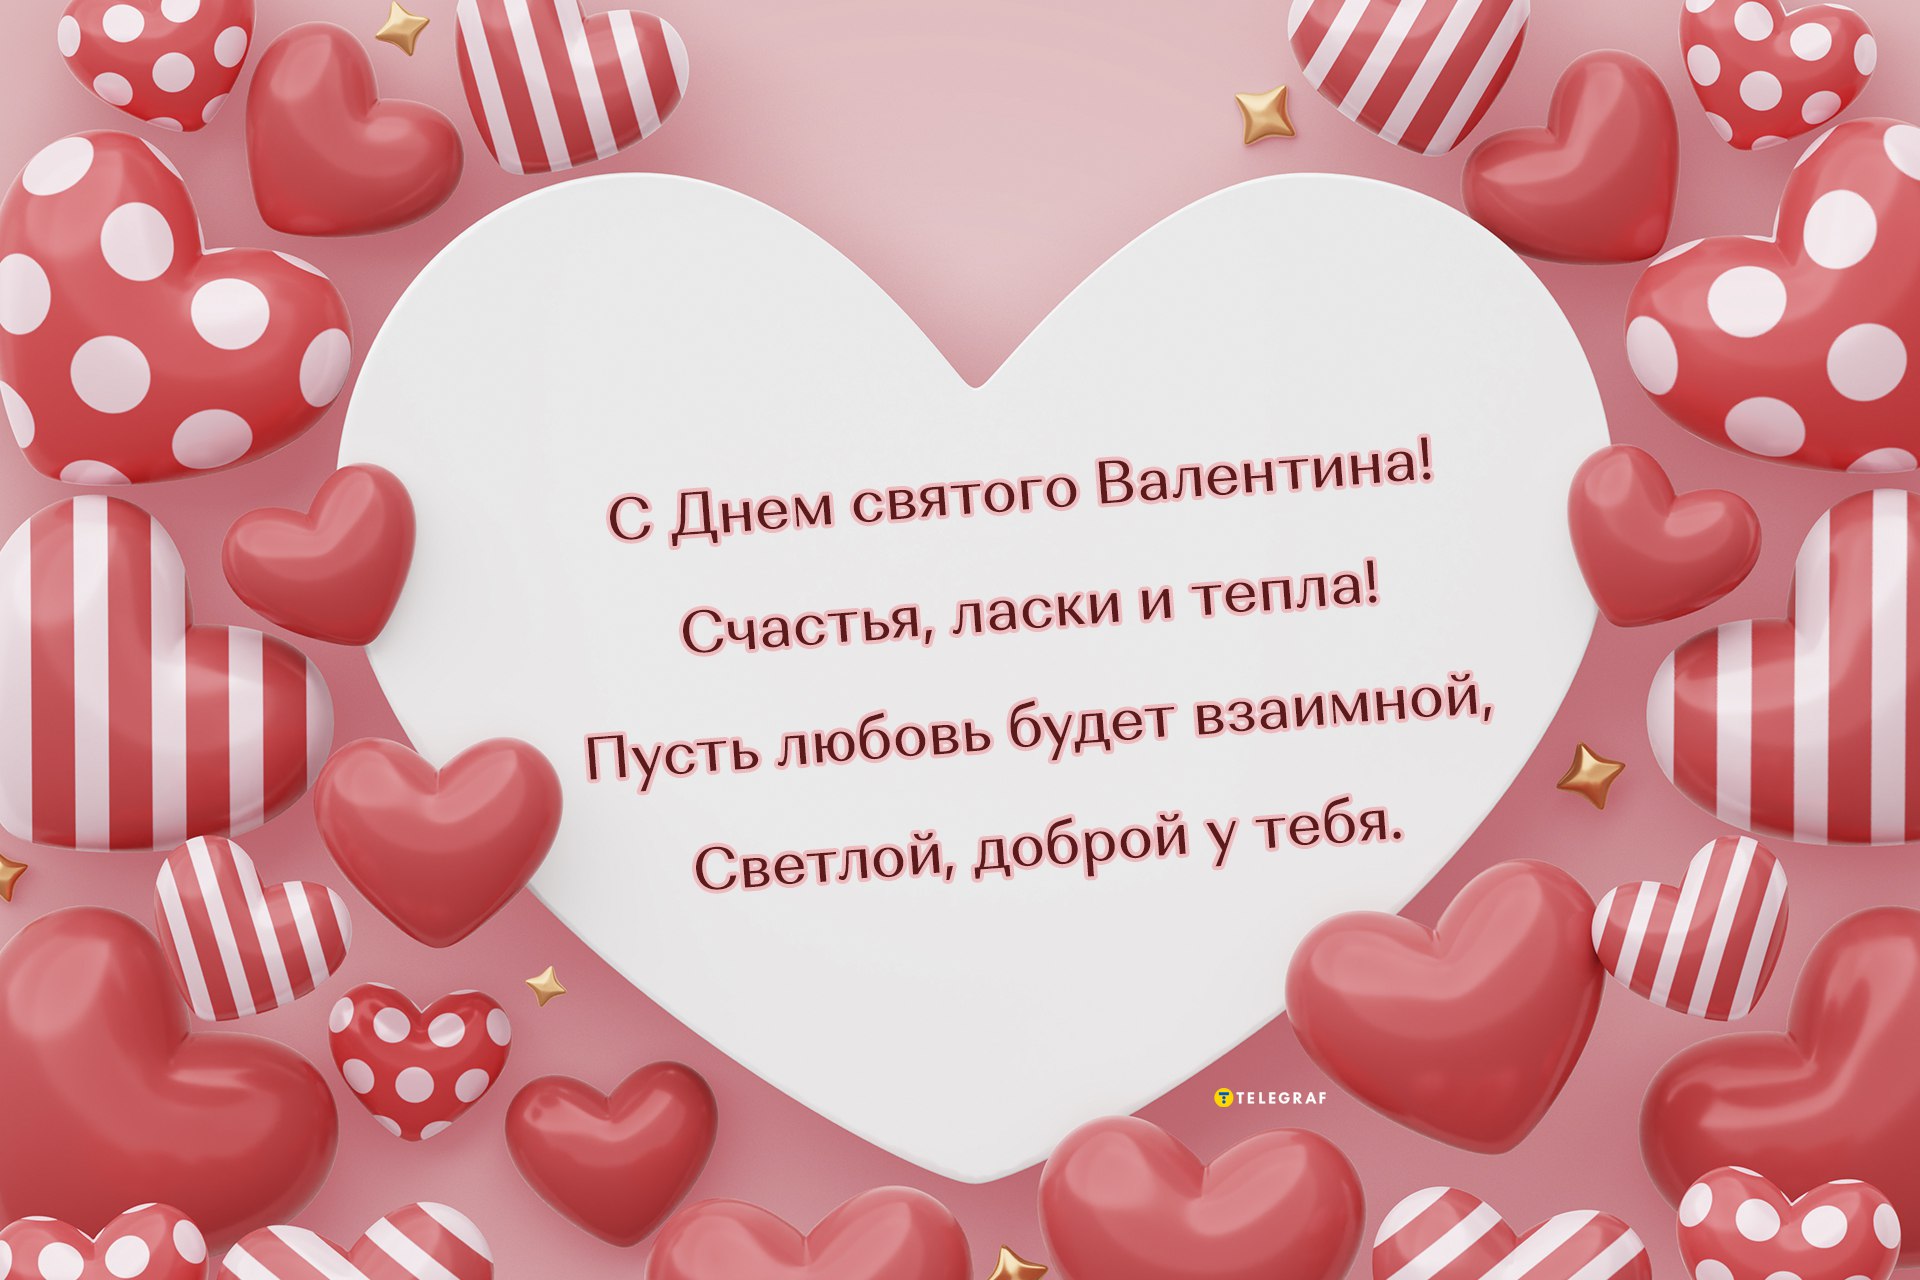 День святого Валентина истории и традиции праздника 14 февраля